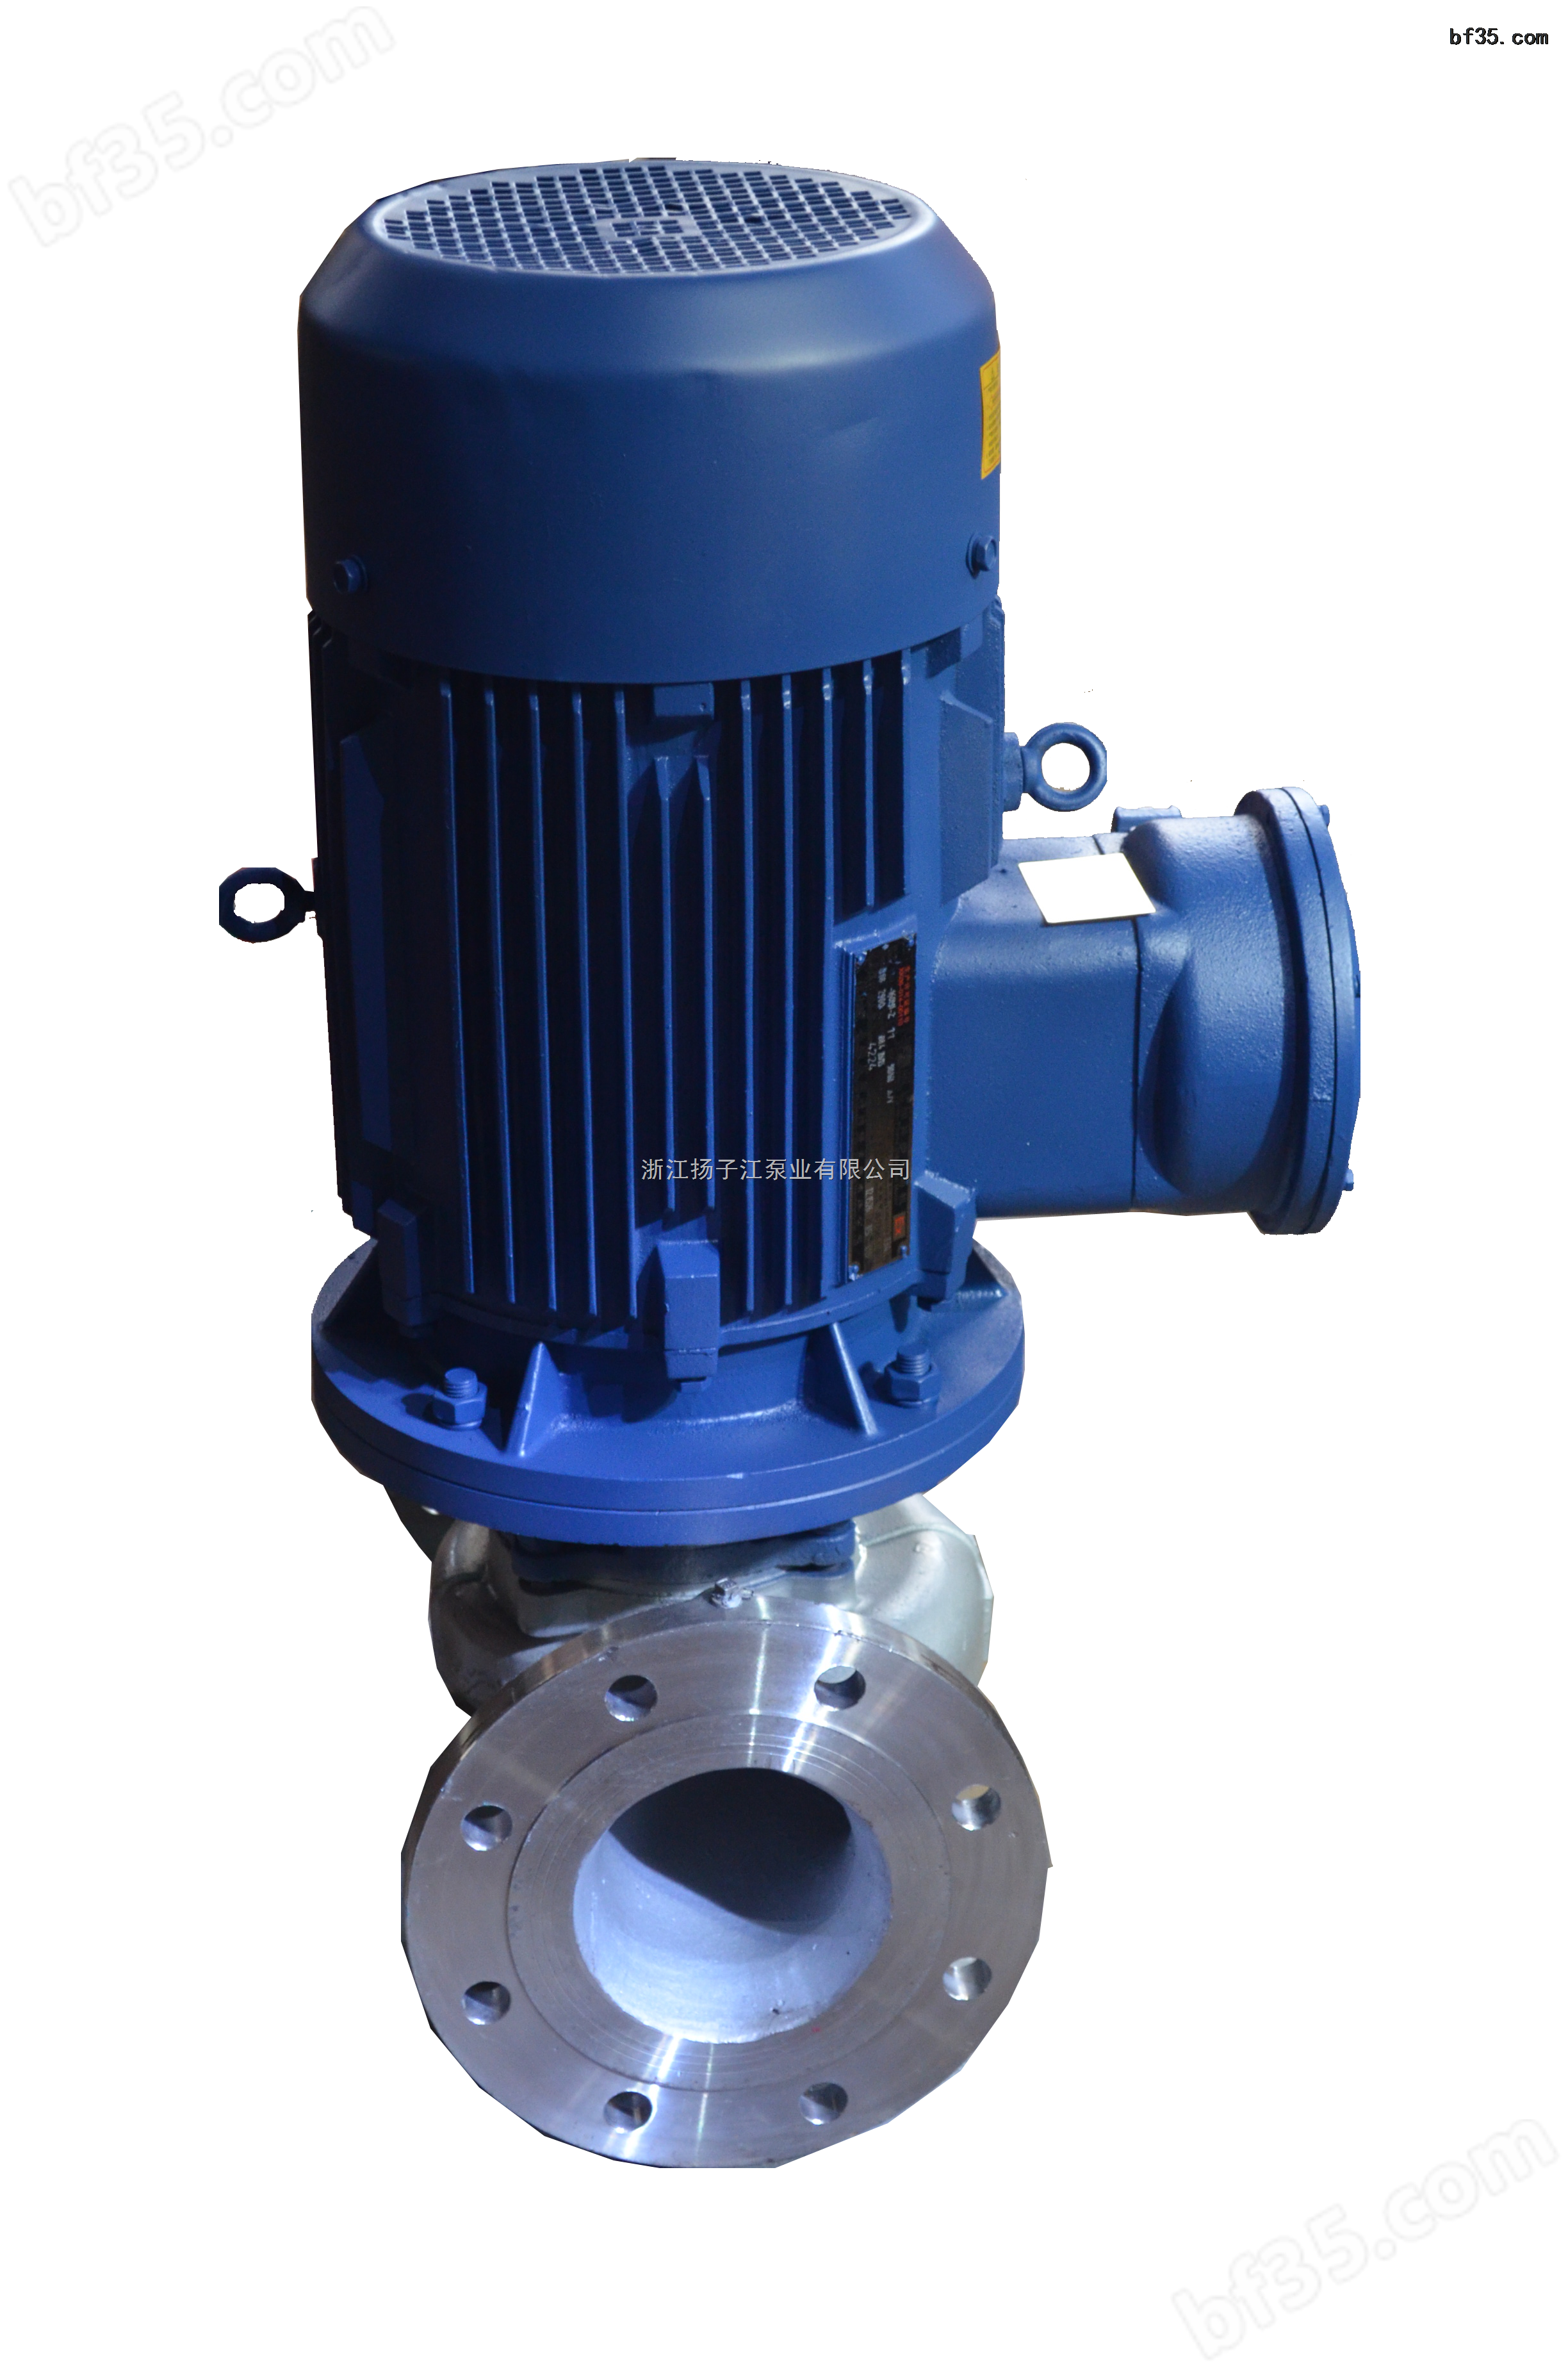 ISG立式单级管道增压离心泵,单级管道泵型号,立式单级防爆离心泵